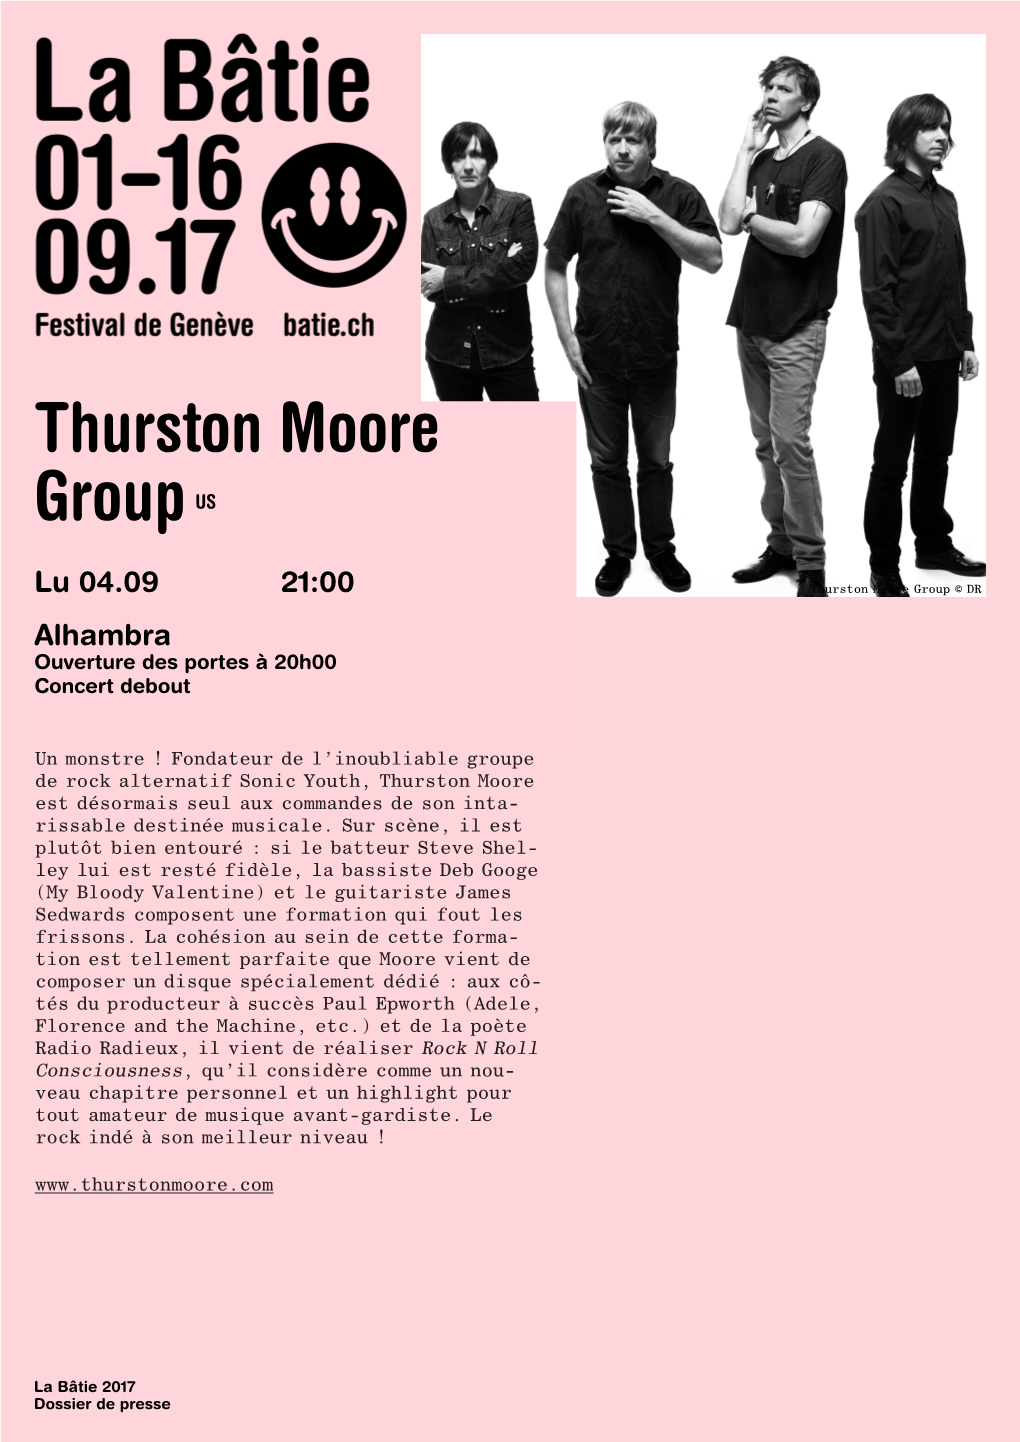 Thurston Moore Group © DR Alhambra Ouverture Des Portes À 20H00 Concert Debout